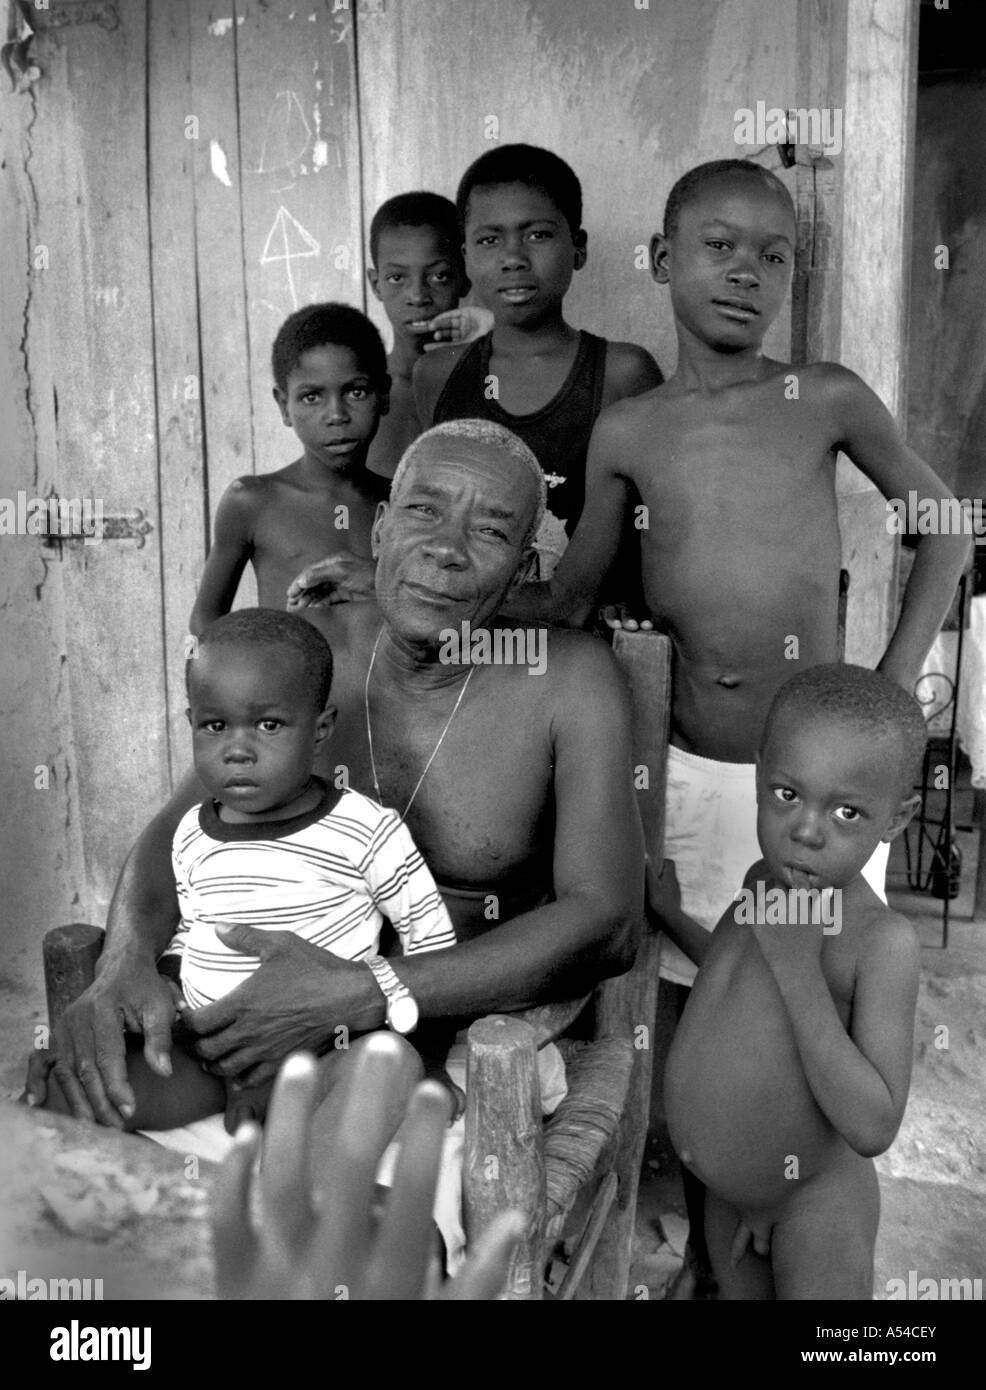 Painet hn1879 434 noir et blanc famille père fils Haïti au pays en développement, de pays moins développés économiquement de la culture Banque D'Images